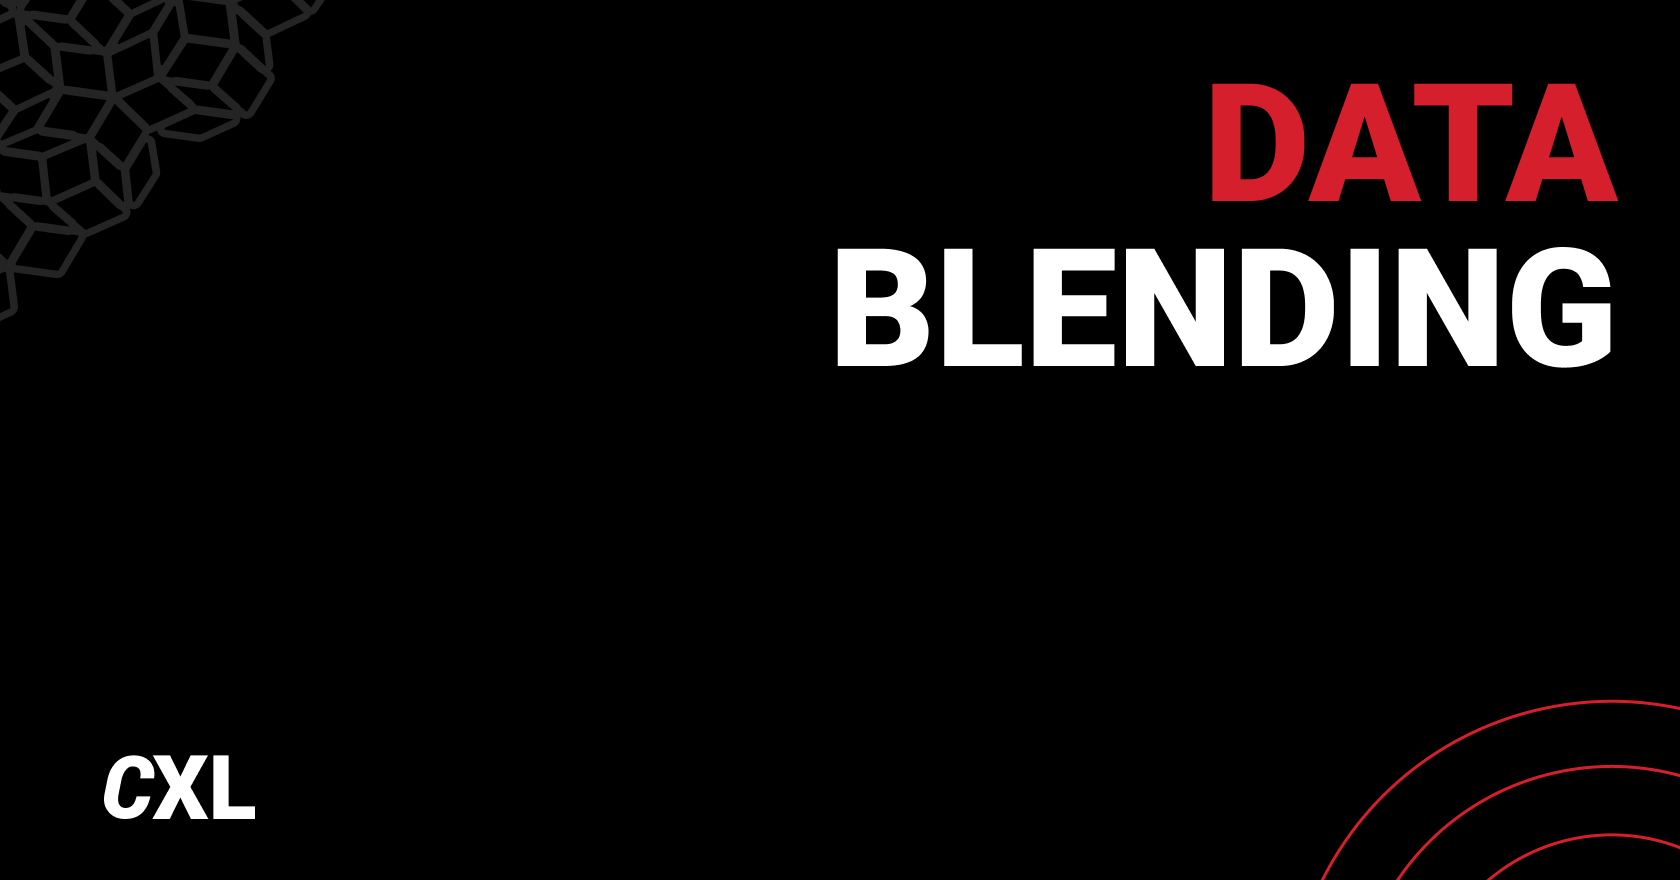 Data Blending: How to Blend Data in Google Data Studio